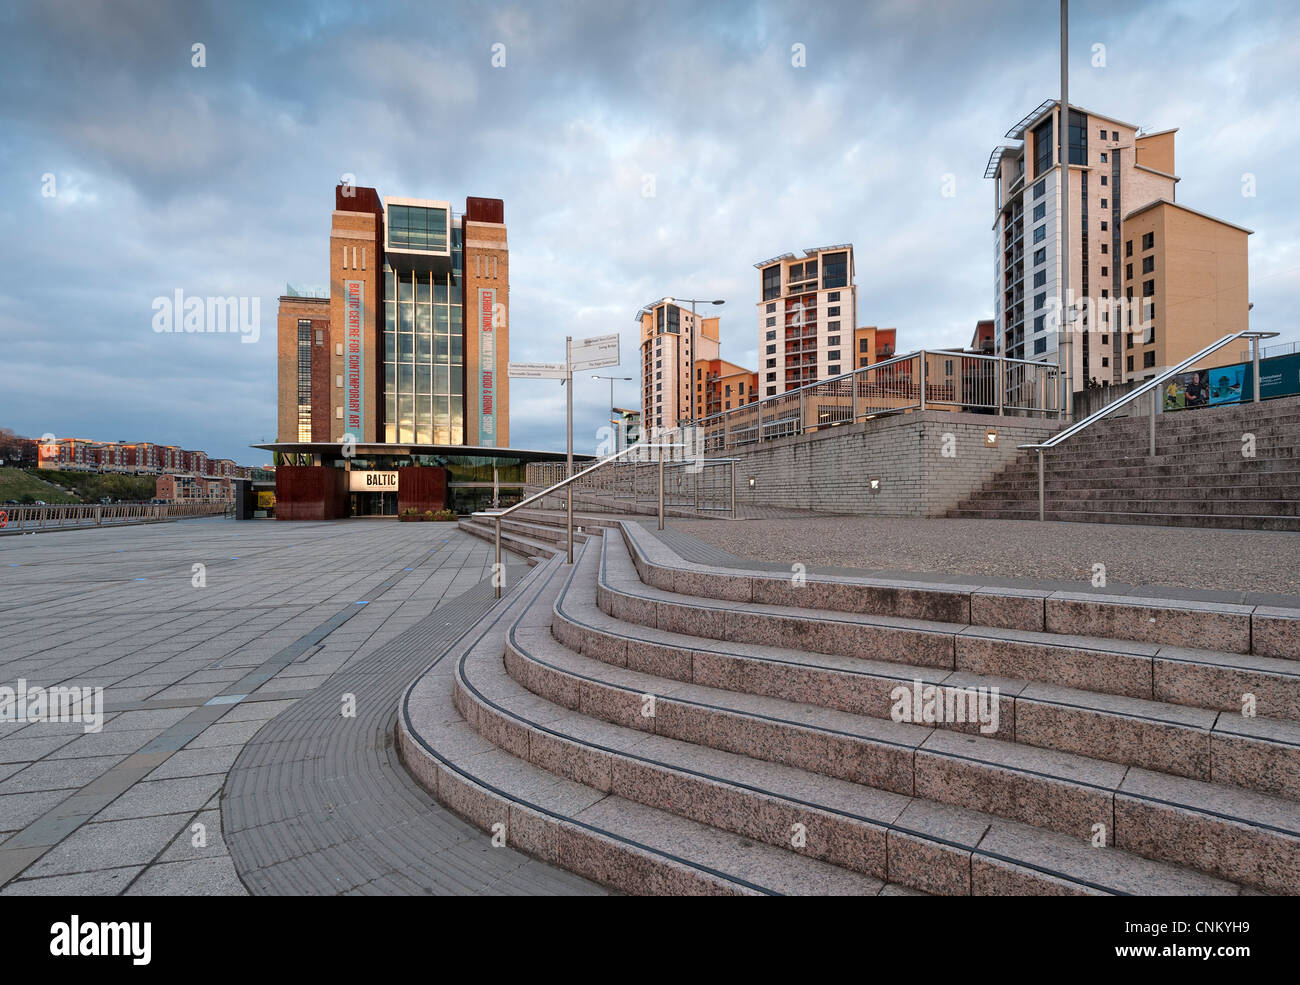 Baltic Square, Baltic Centre for Contemporary Art in Gateshead Stock Photo